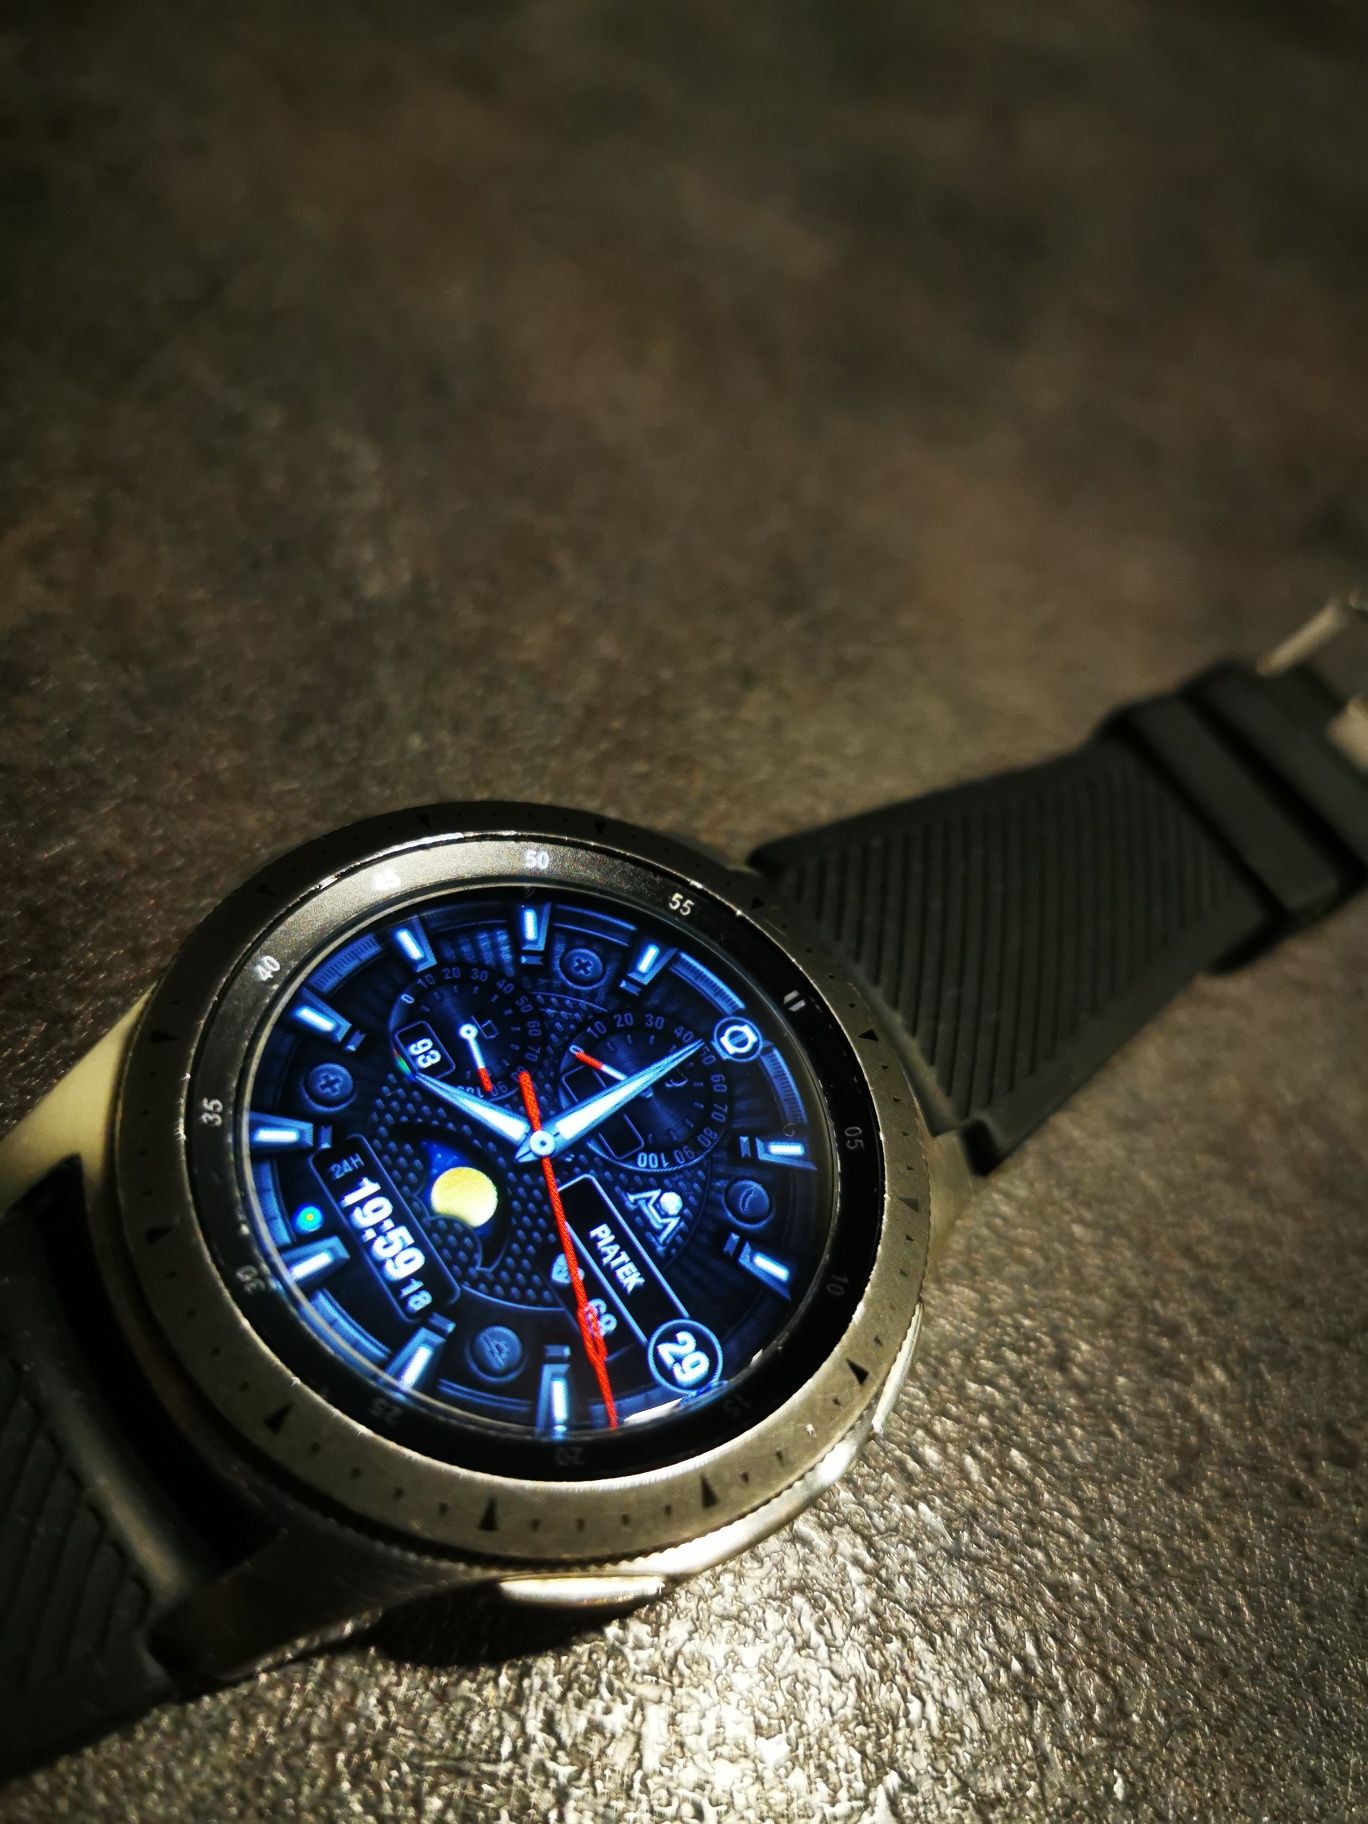 Samsung Watch 46mm - smartwatch